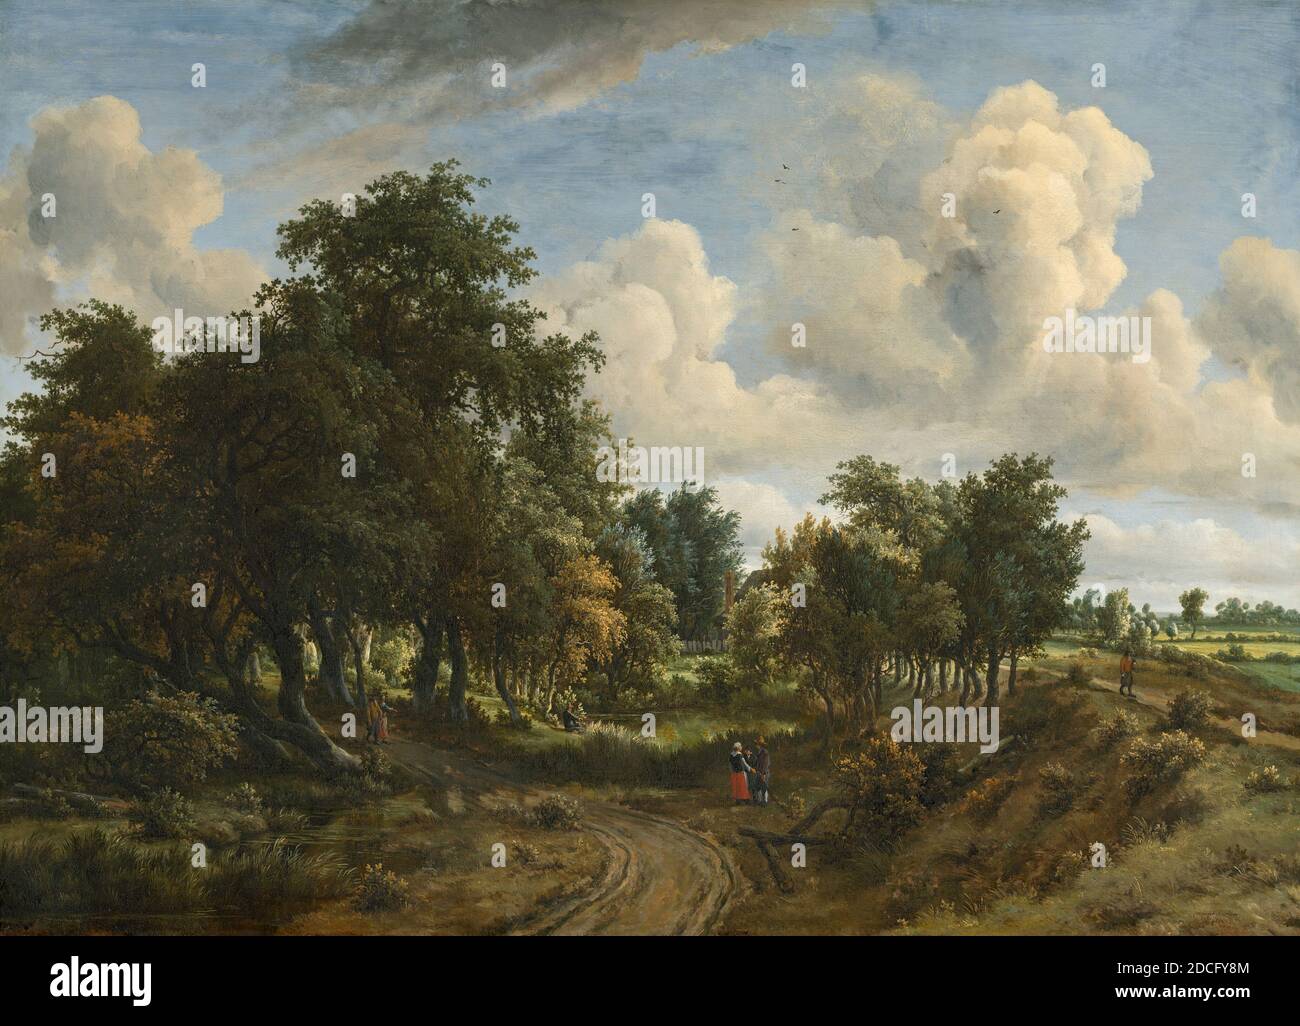 Meindert Hobbema, (Künstler), Niederländisch, 1638 - 1709, A Wooded Landscape, 1663, Öl auf Leinwand, gesamt: 94.7 x 130.5 cm (37 5/16 x 51 3/8 in.), studierte Meindert Hobbema bei dem bekannten Landschaftskünstler Jacob van Ruisdael, und etliche seiner Kompositionen entstanden aus dem Werk seines ersten Meisters. Hobbema näherte sich der Natur in einer geradlinigen Art und Weise, Darstellung malerischer, ländlicher Landschaft durch die Anwesenheit von Bauern oder Jäger belebt. Oft verwendete er Lieblingsmotive wie alte Wassermühlen, strohgedeckte Hütten und einbalsamische Deiche und ordnete sie in neue Kompositionen um Stockfoto